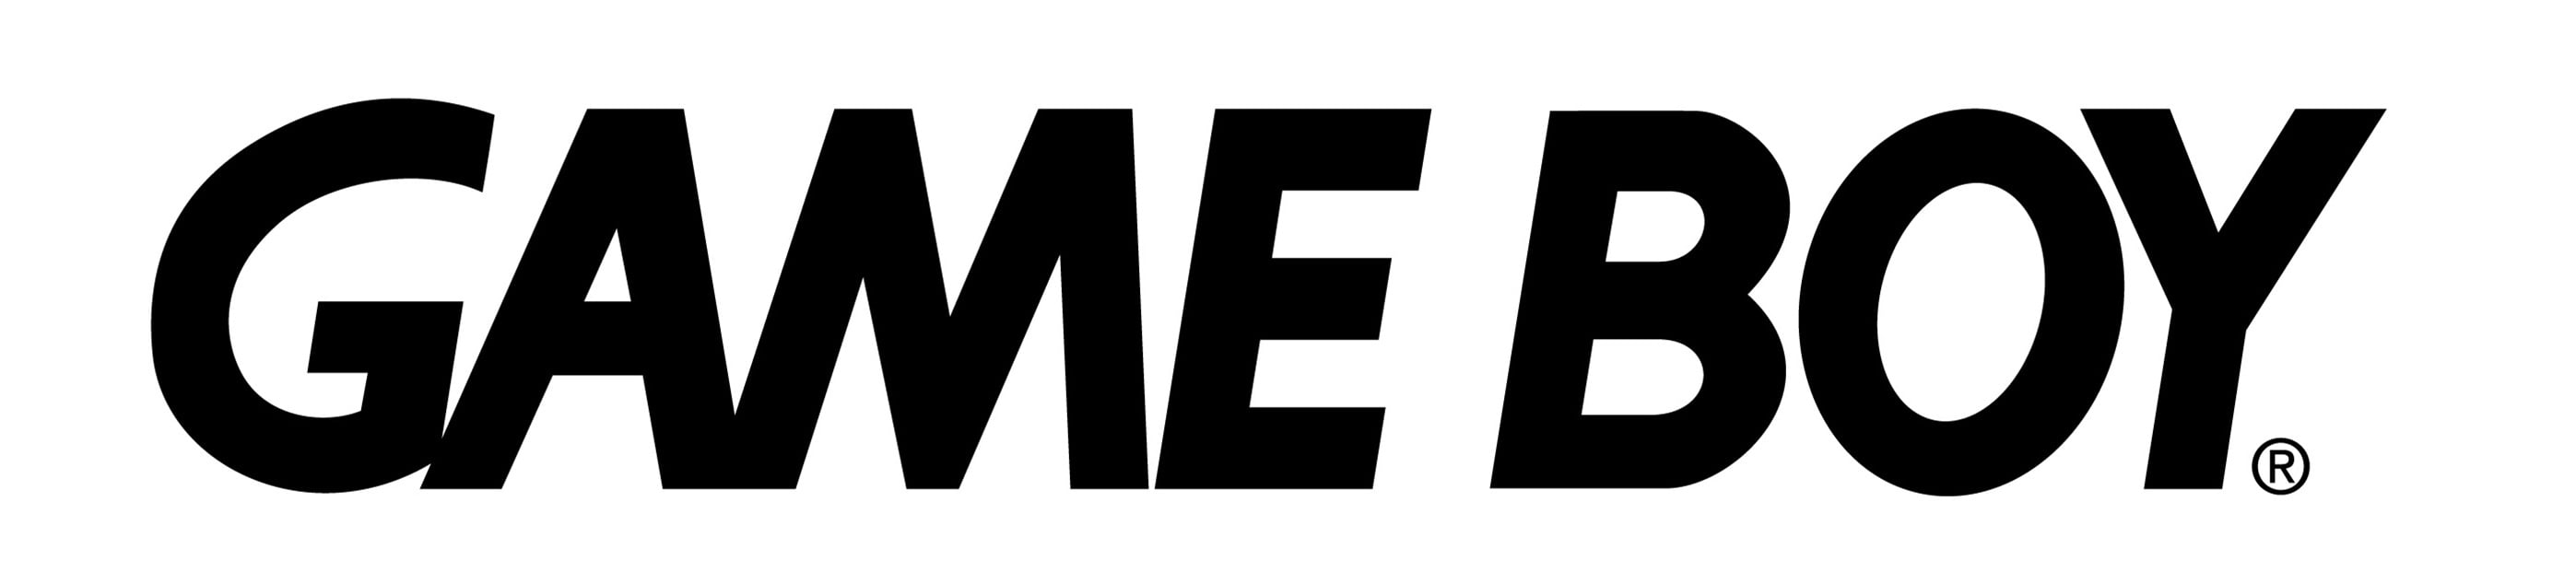 Image result for gameboy logo